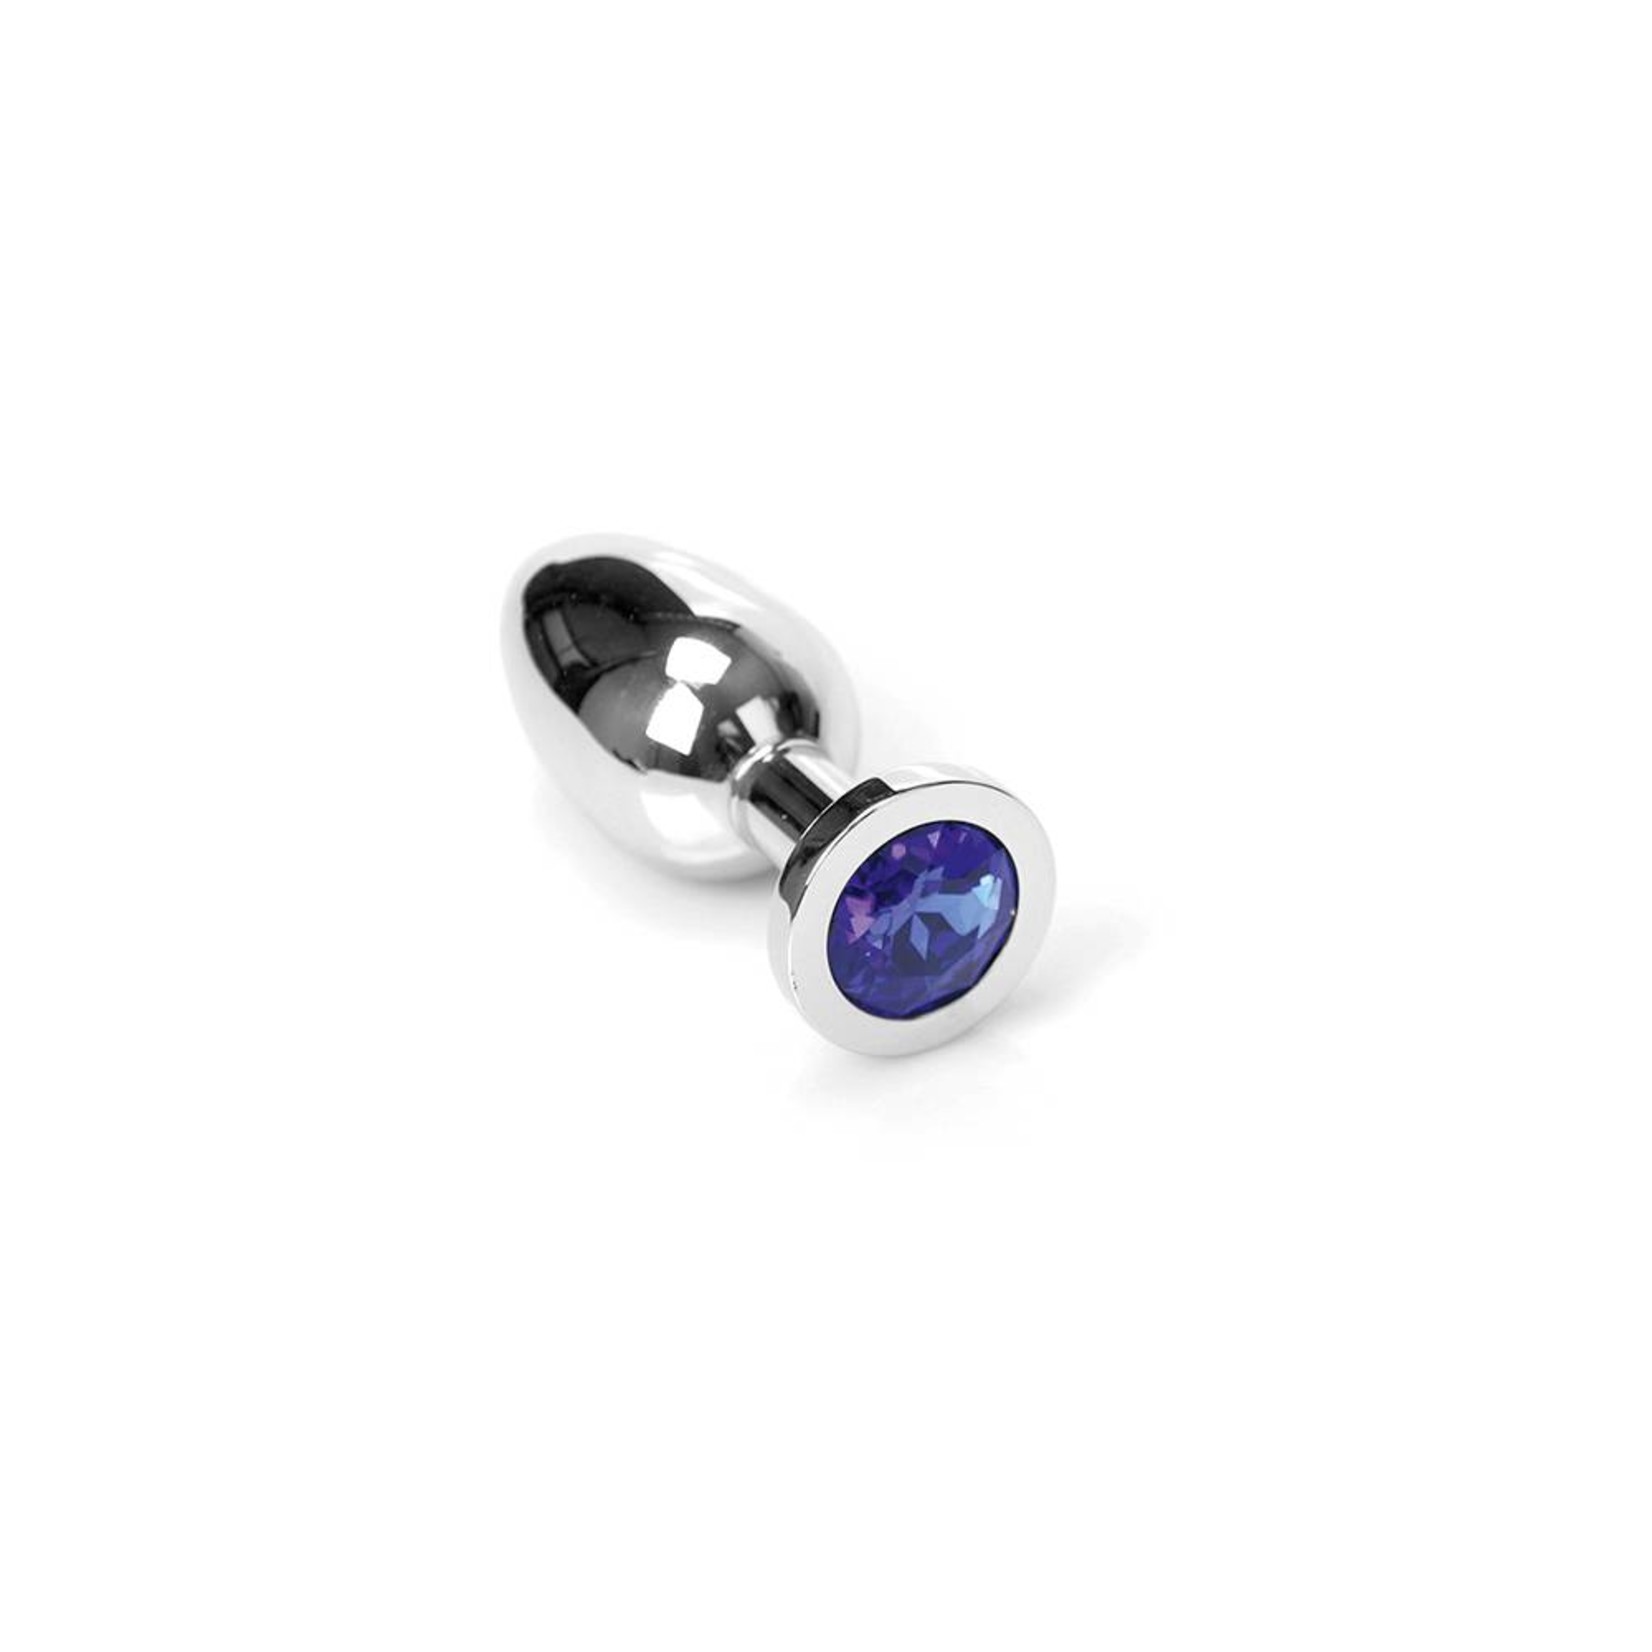 KIOTOS Steel Jewel Buttplug - Small Blue